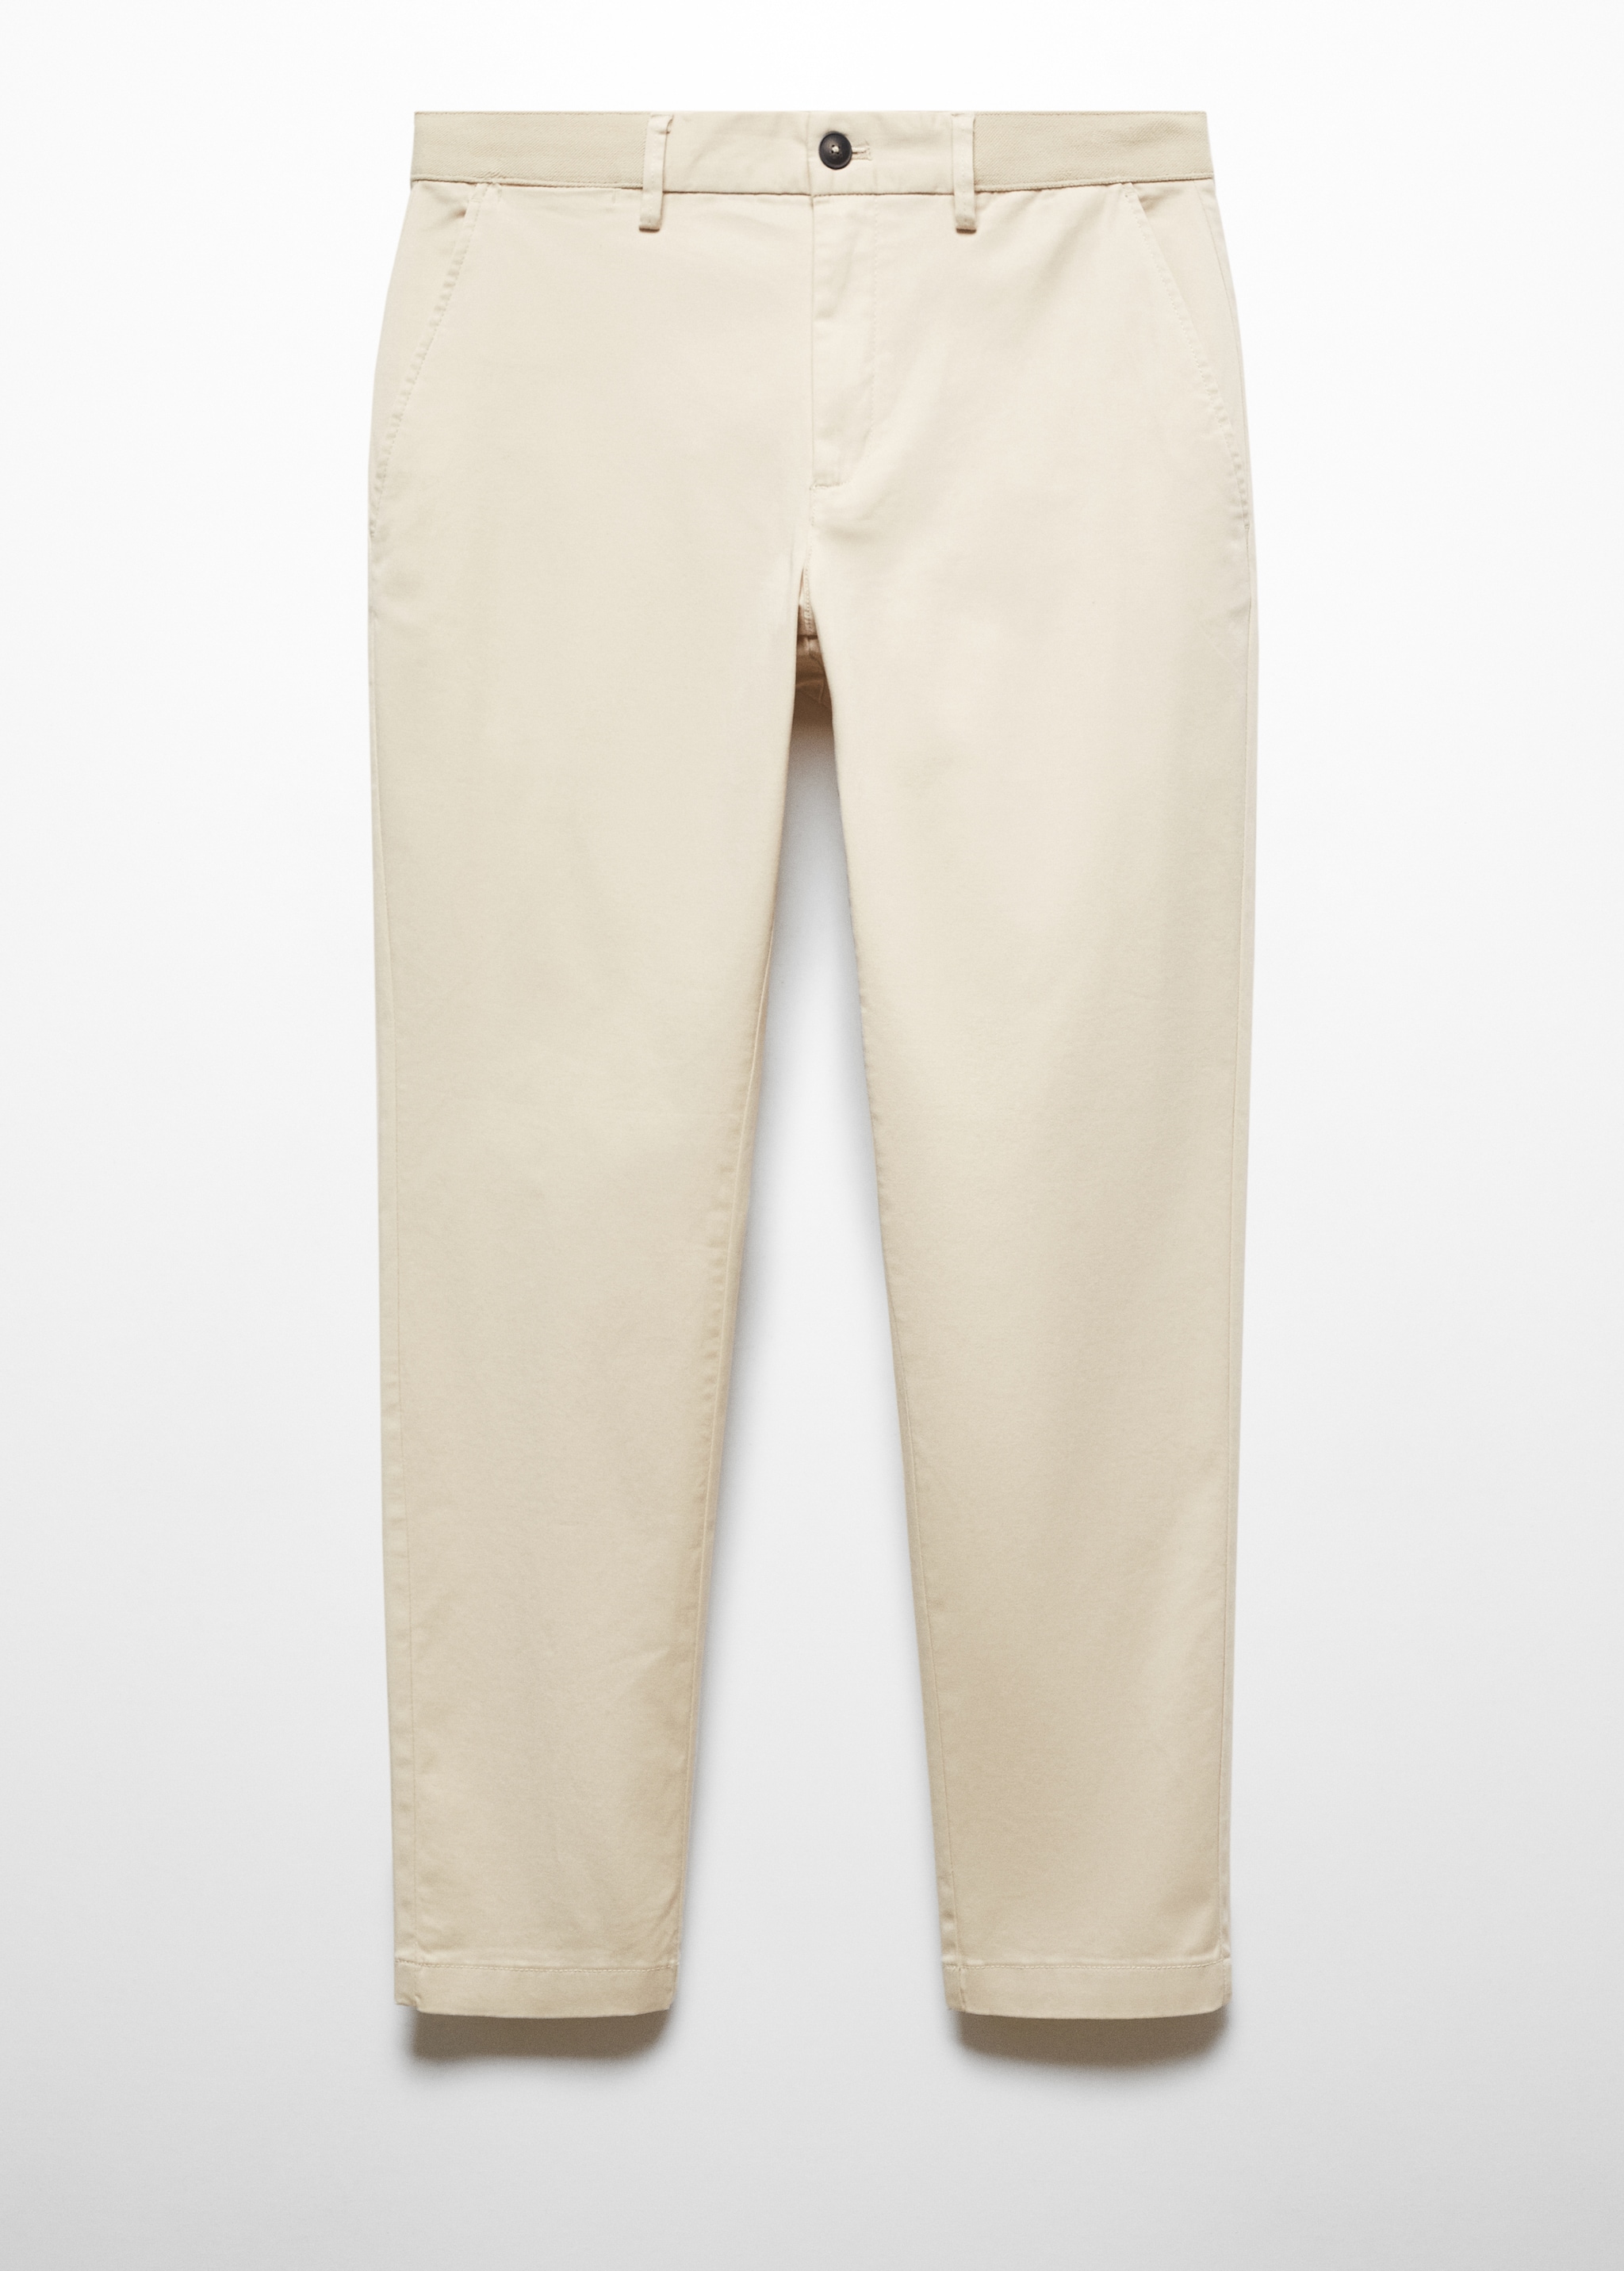 Pantalón algodón tapered crop - Artículo sin modelo